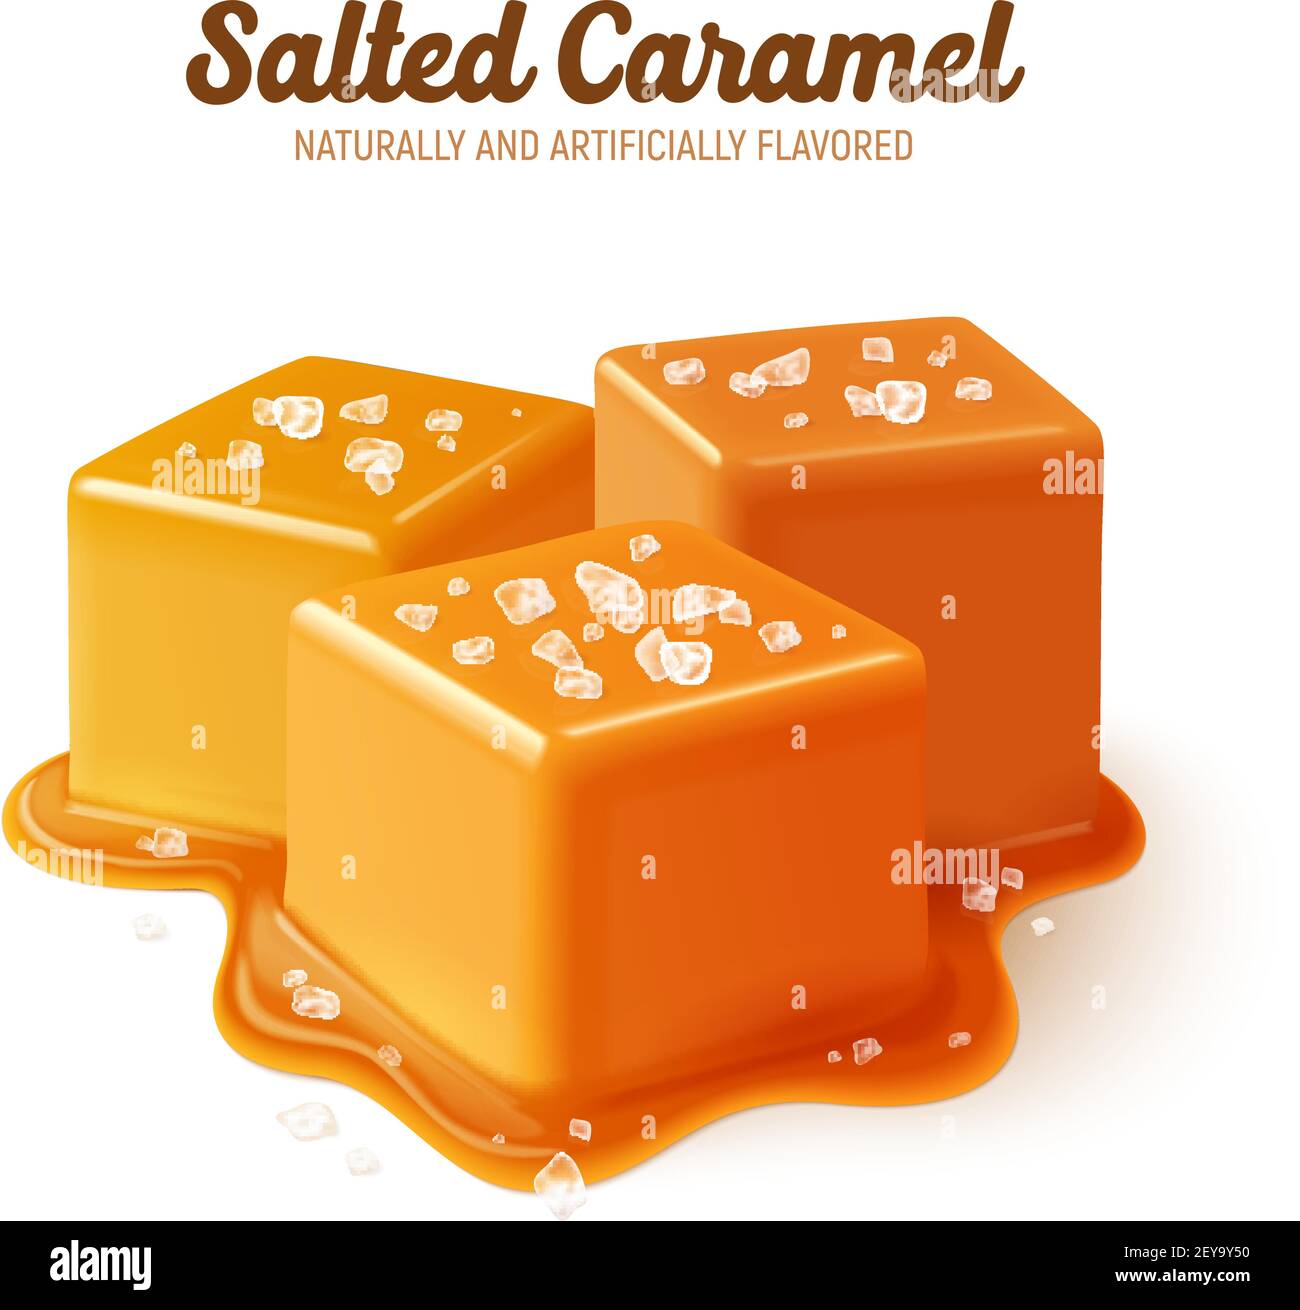 Composition au caramel salé coloré et réaliste avec naturellement et artificiellement illustration vectorielle de titre aromatisée Illustration de Vecteur